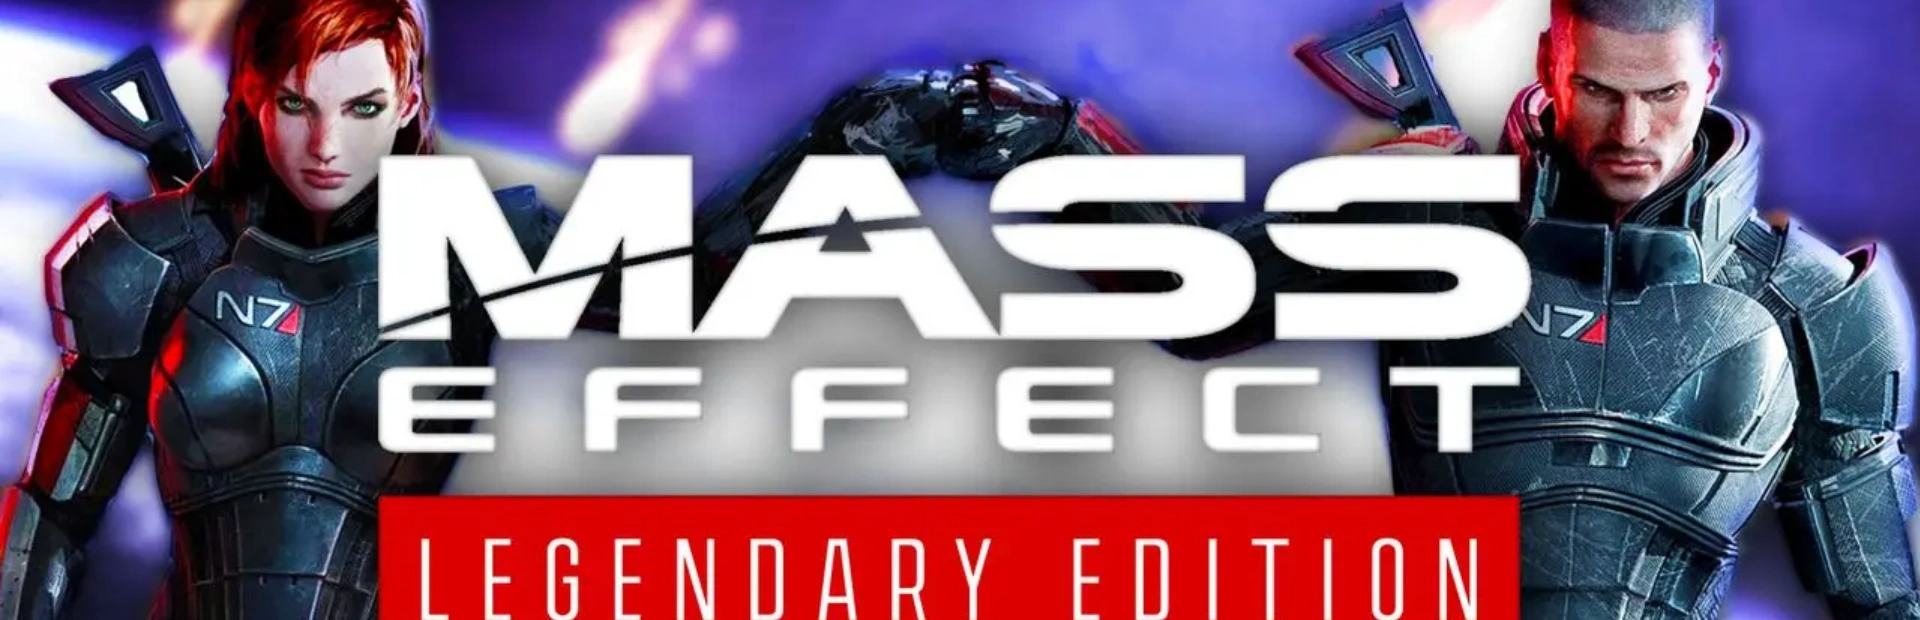 دانلود بازی Mass Effect Legendary Edition برای PC | گیمباتو